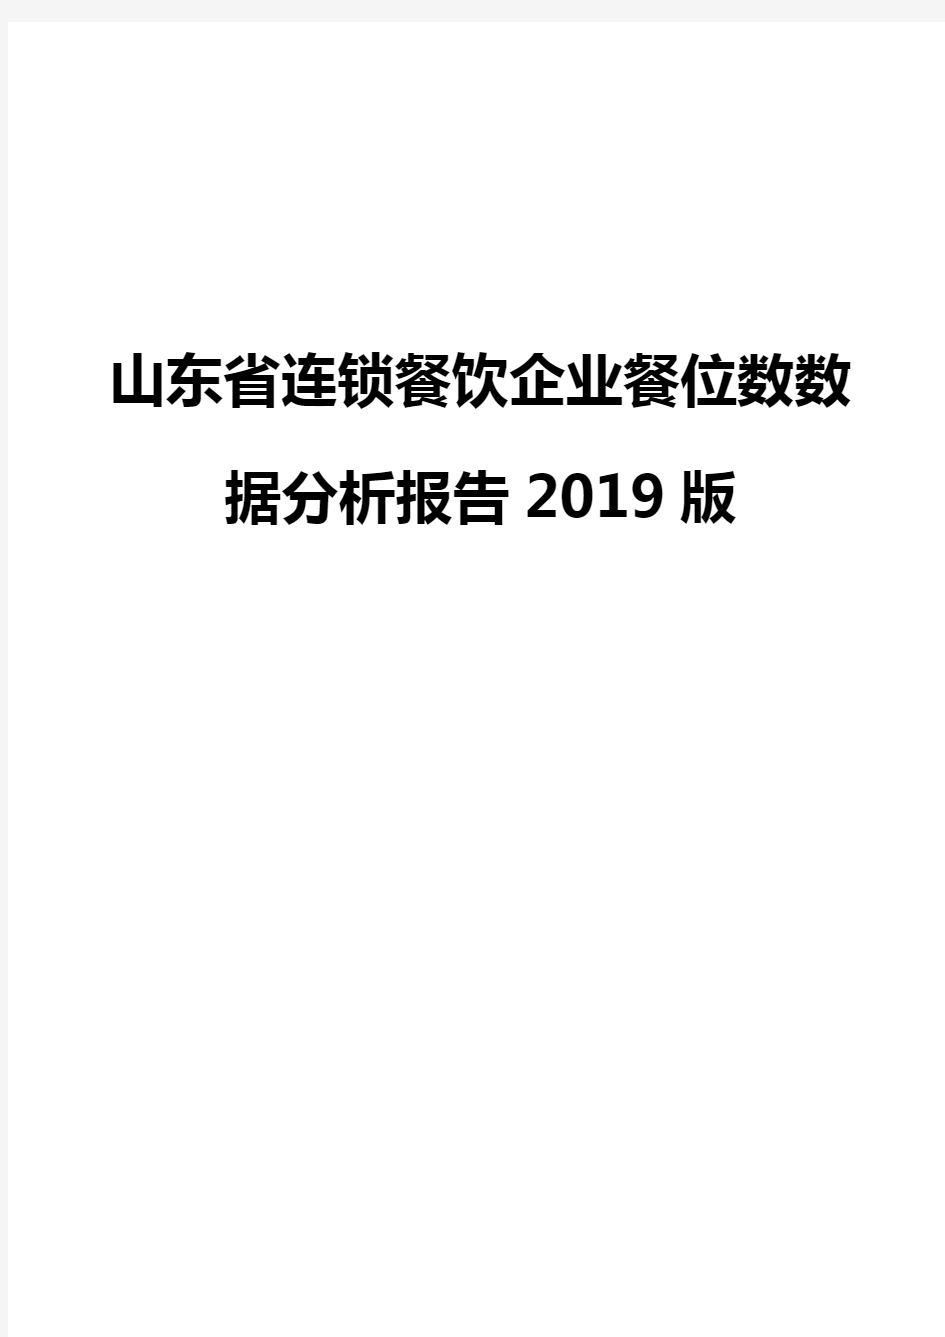 山东省连锁餐饮企业餐位数数据分析报告2019版